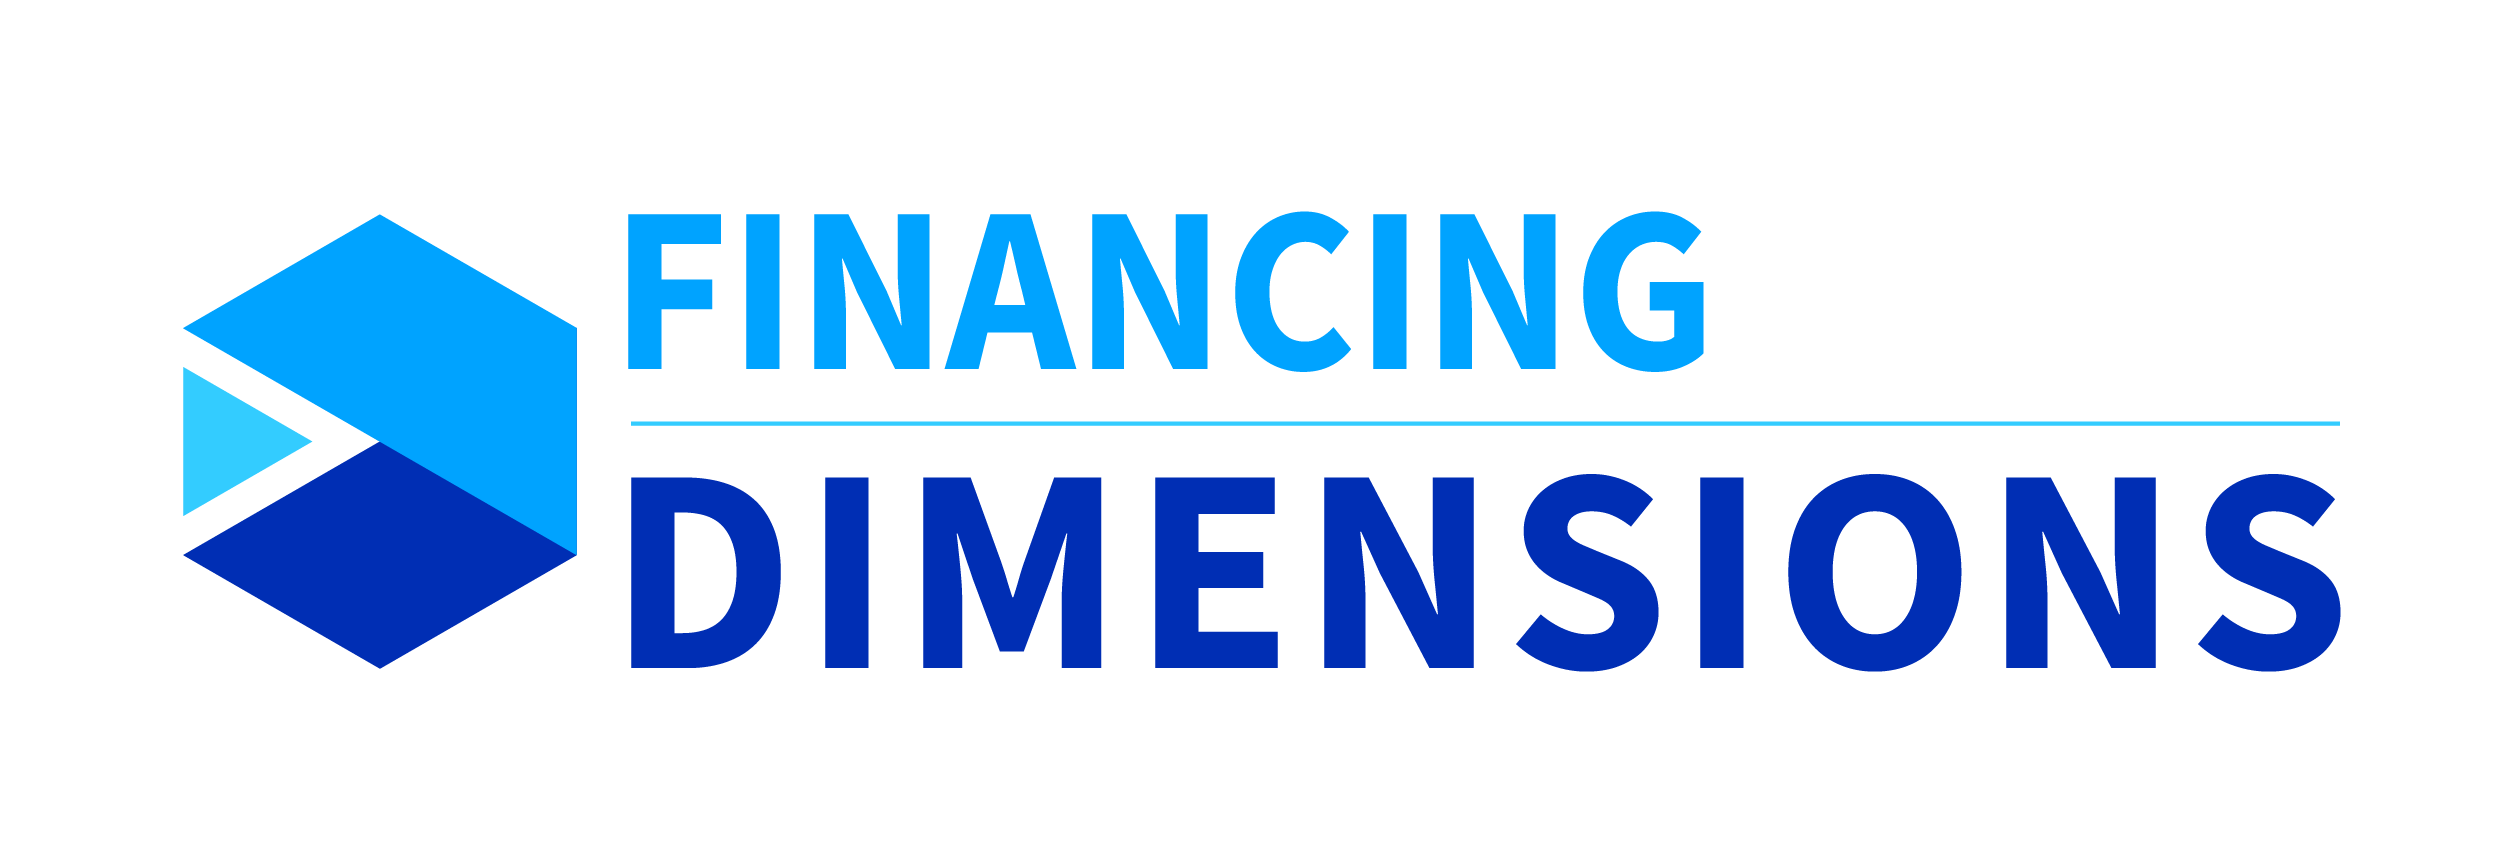 Acceltech Pte Ltd - Dimensions du financement